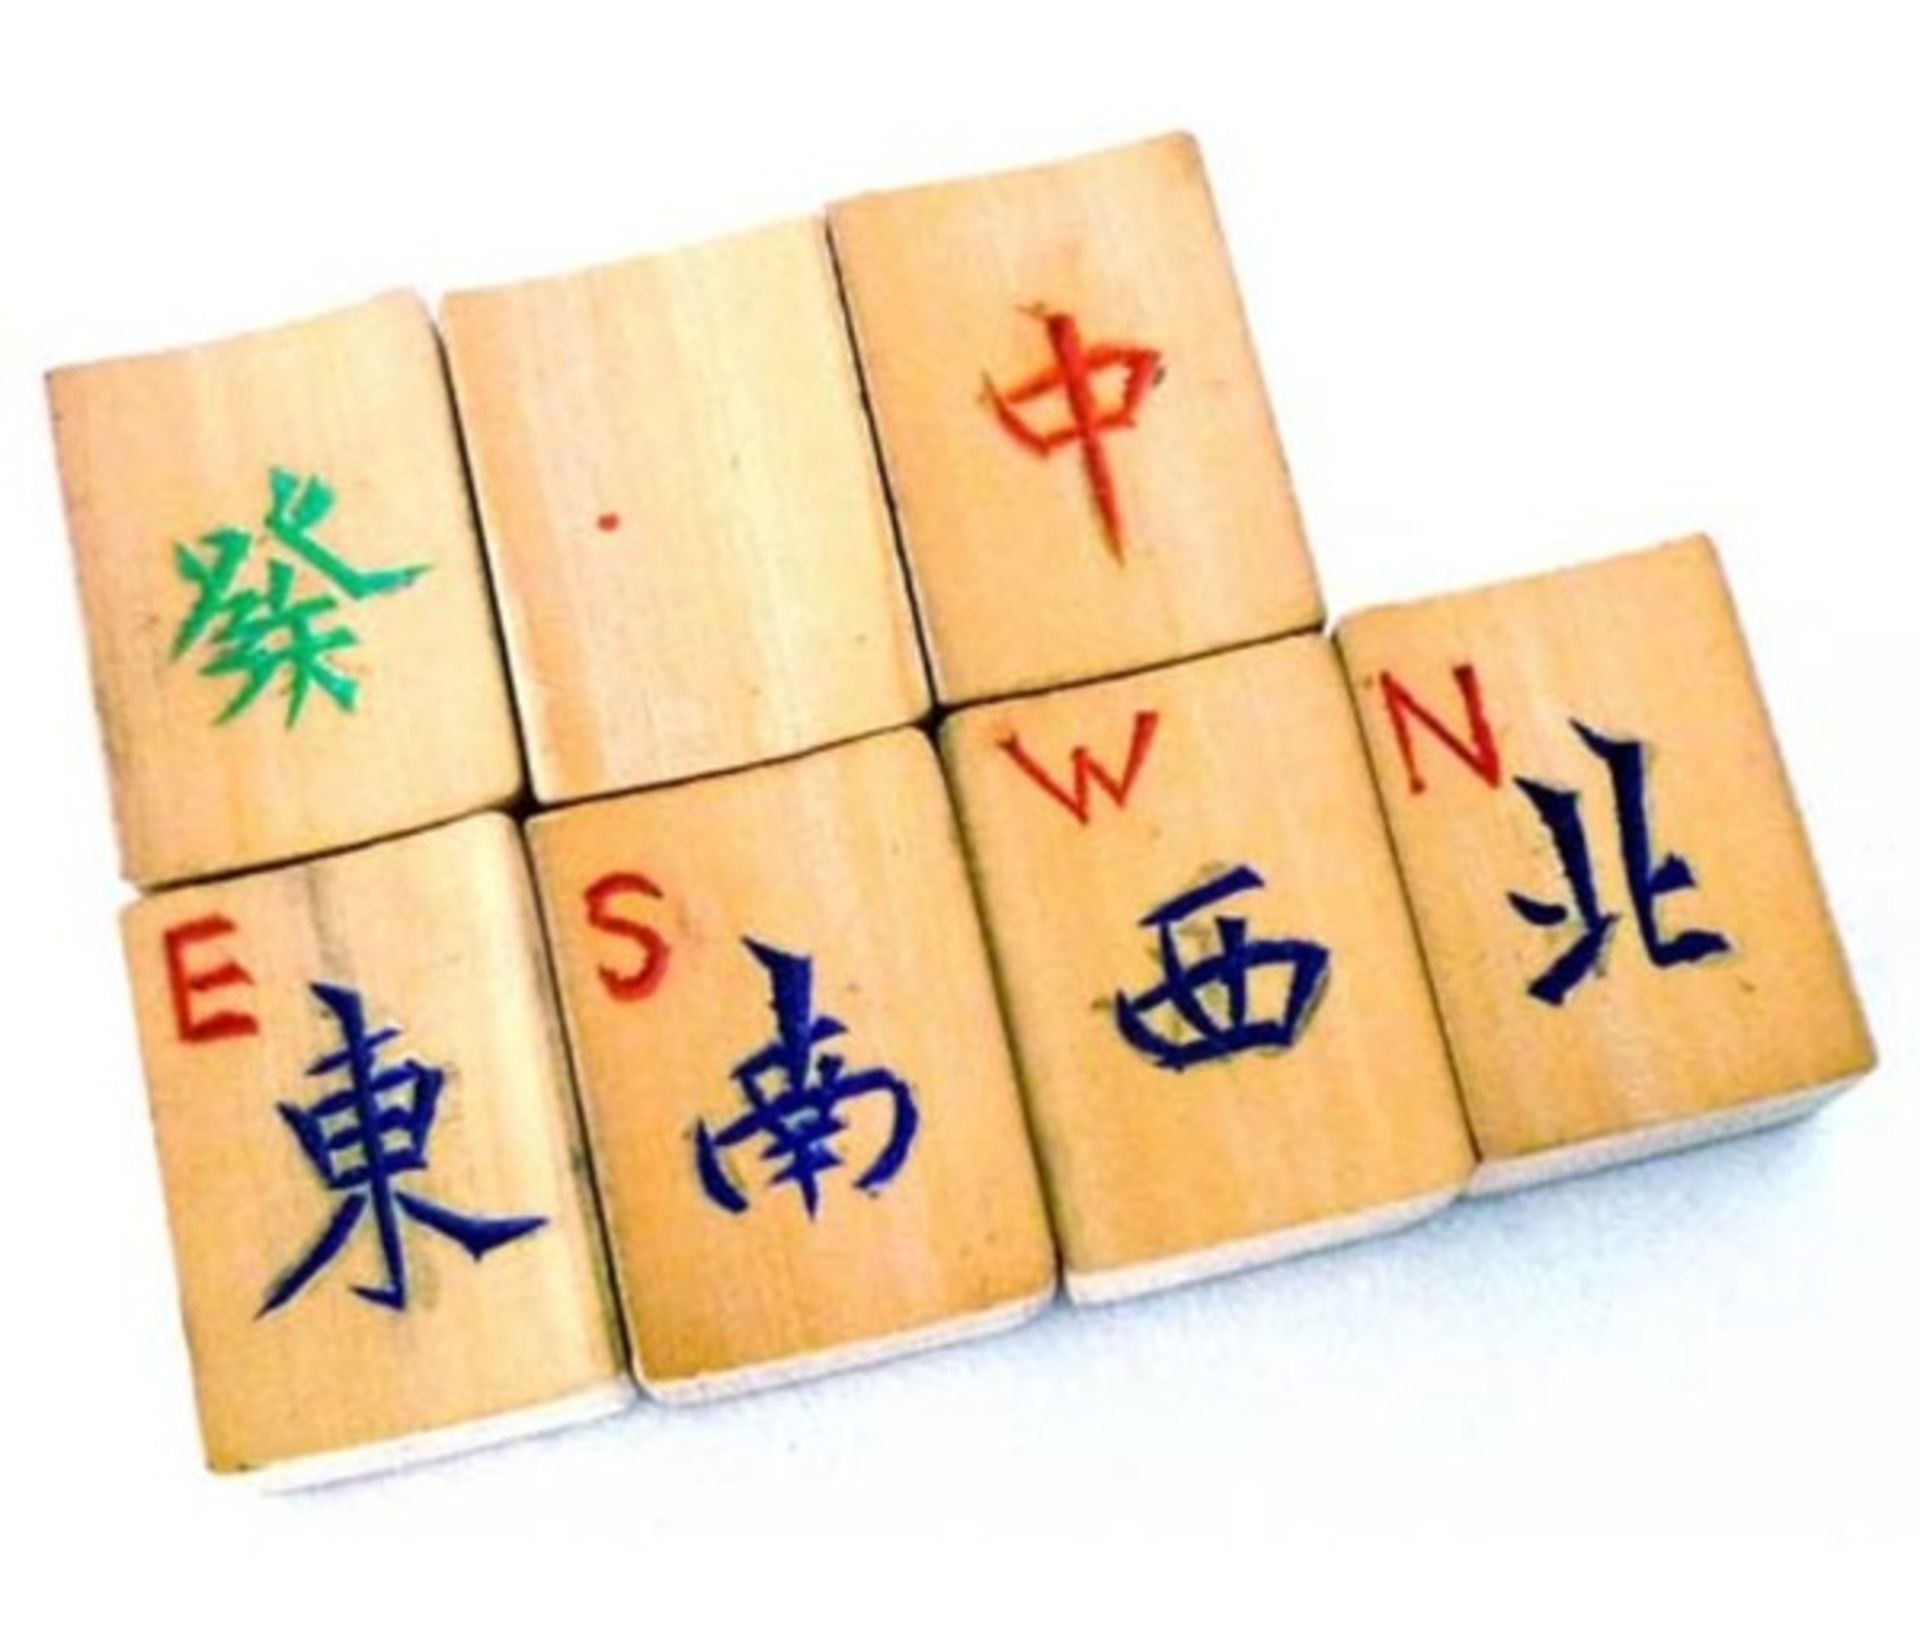 (Mahjong) Mahjong bamboe, veelkleurige Chinese doos, ca. 1924 - Bild 4 aus 7